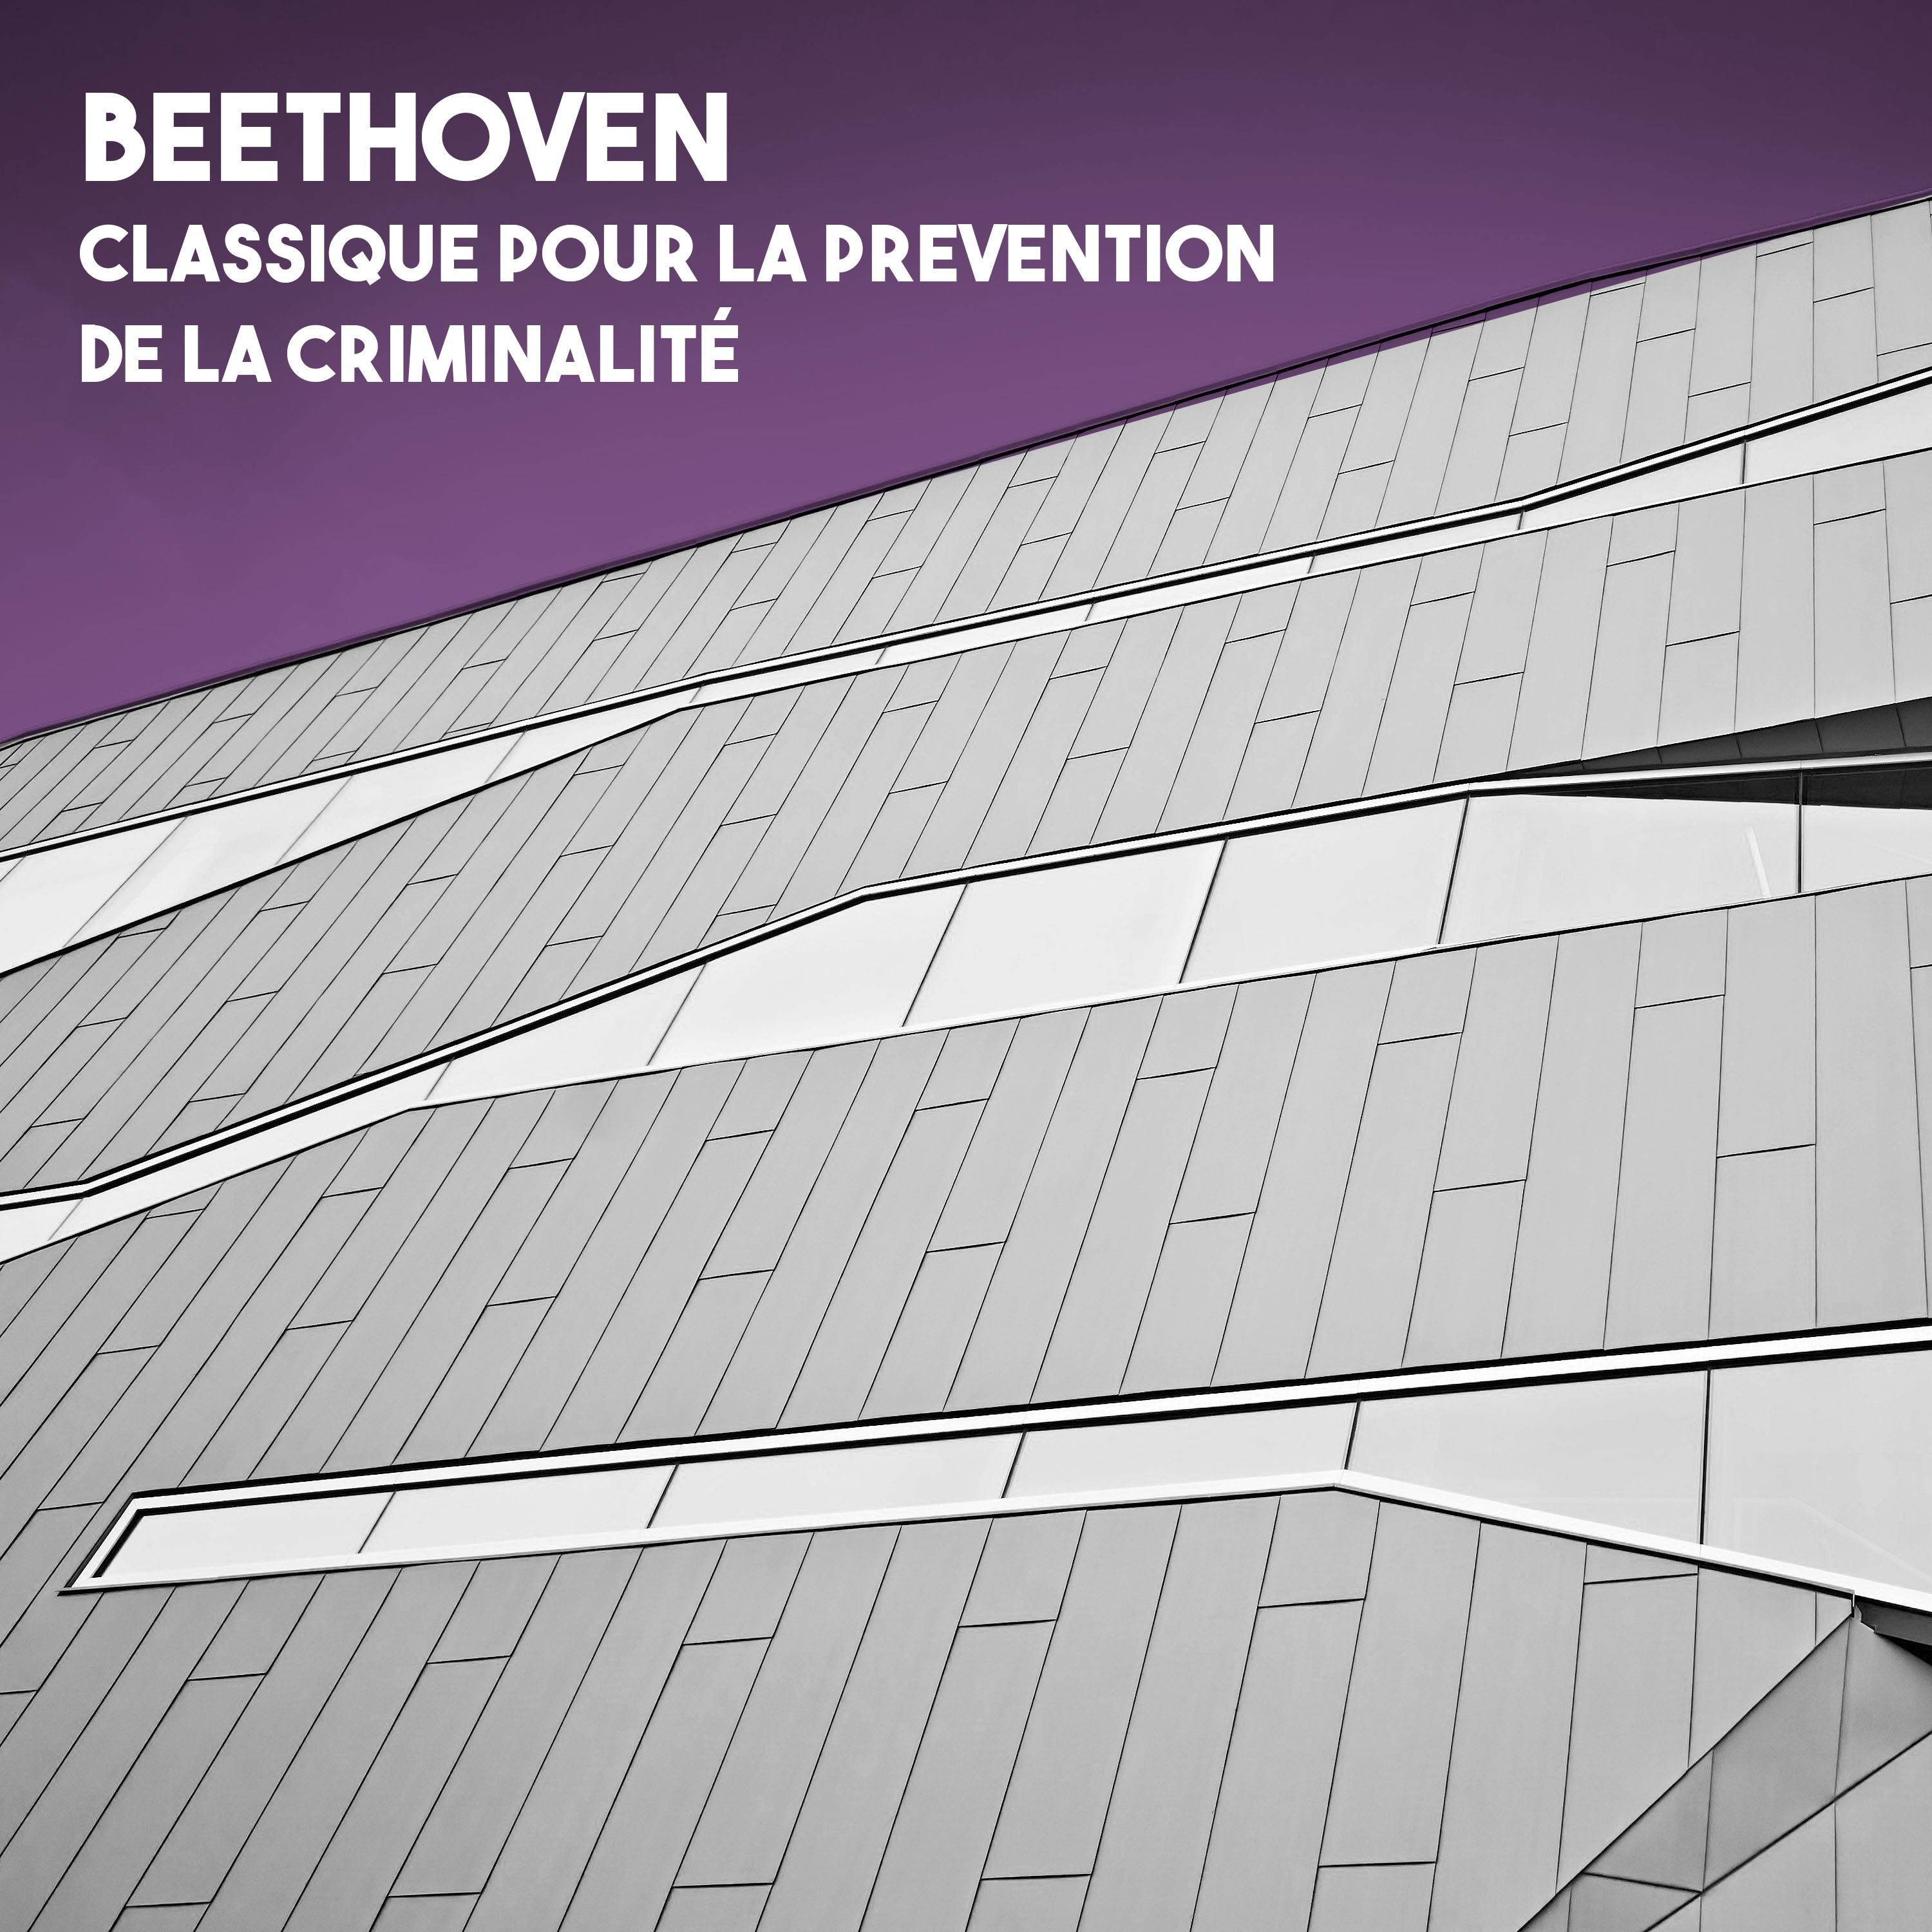 Beethoven: Classique pour la prevention de la criminalite